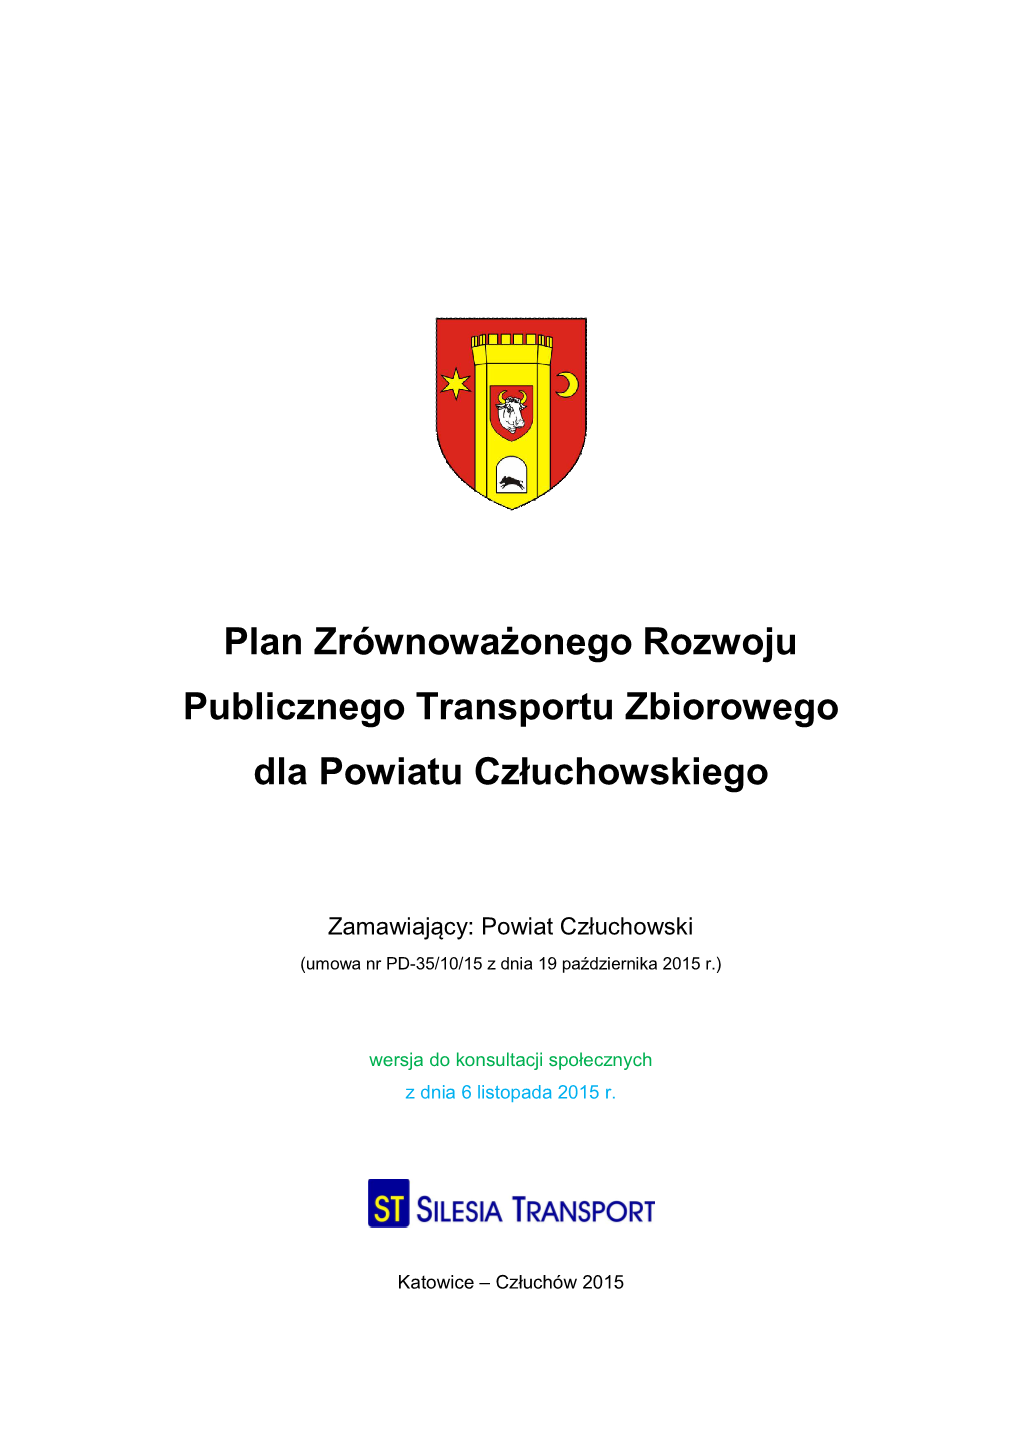 Plan Zrównoważonego Rozwoju Publicznego Transportu Zbiorowego Dla Powiatu Człuchowskiego